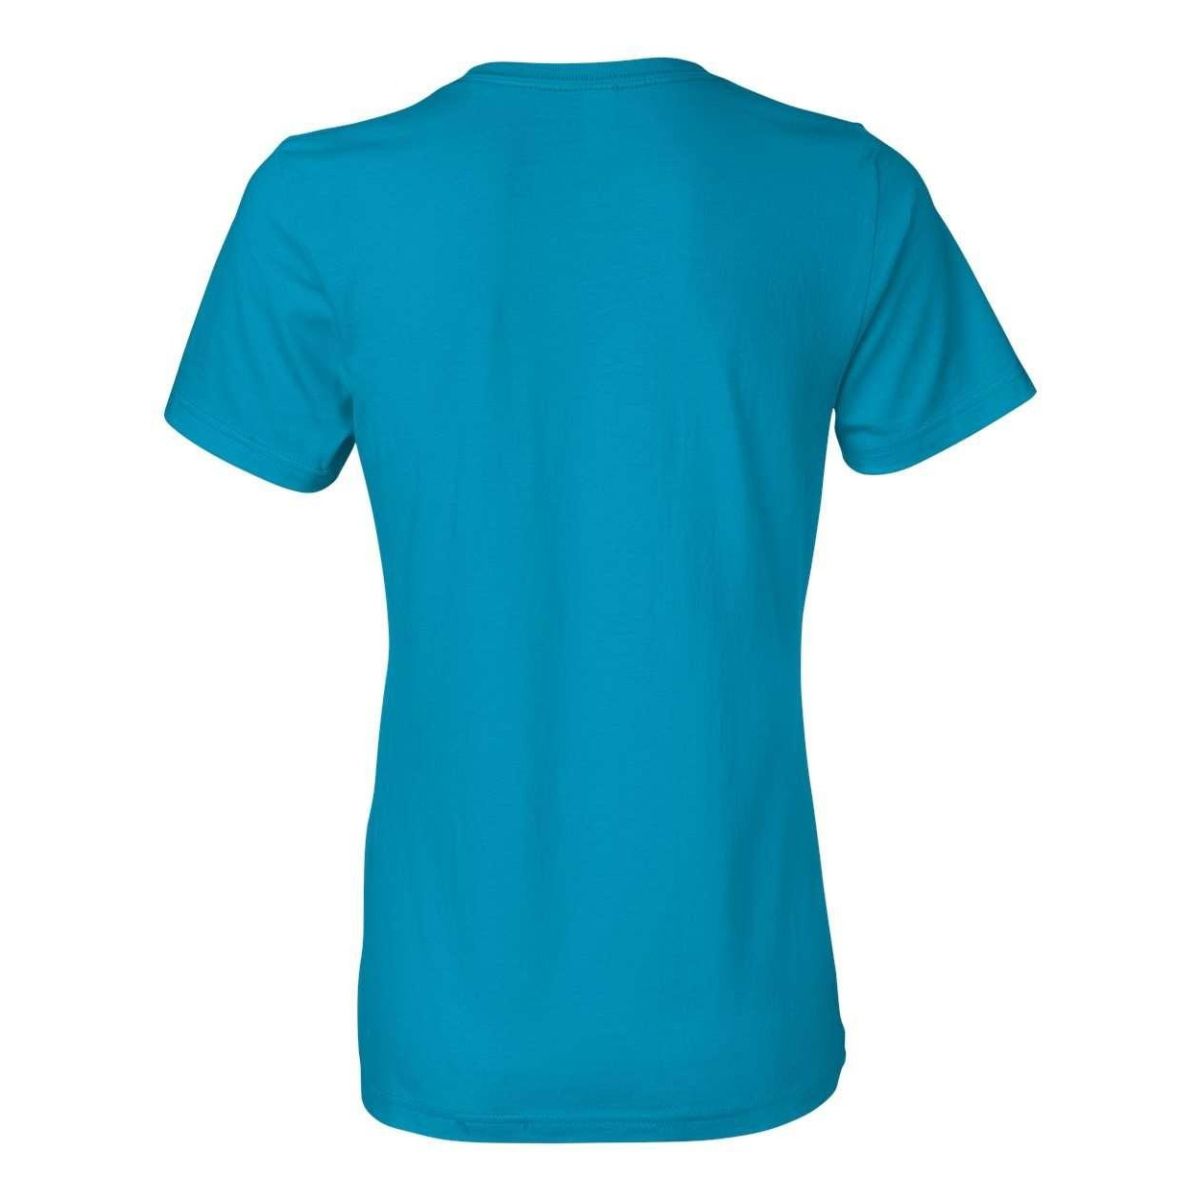 Женская легкая футболка Gildan Softstyle Floso